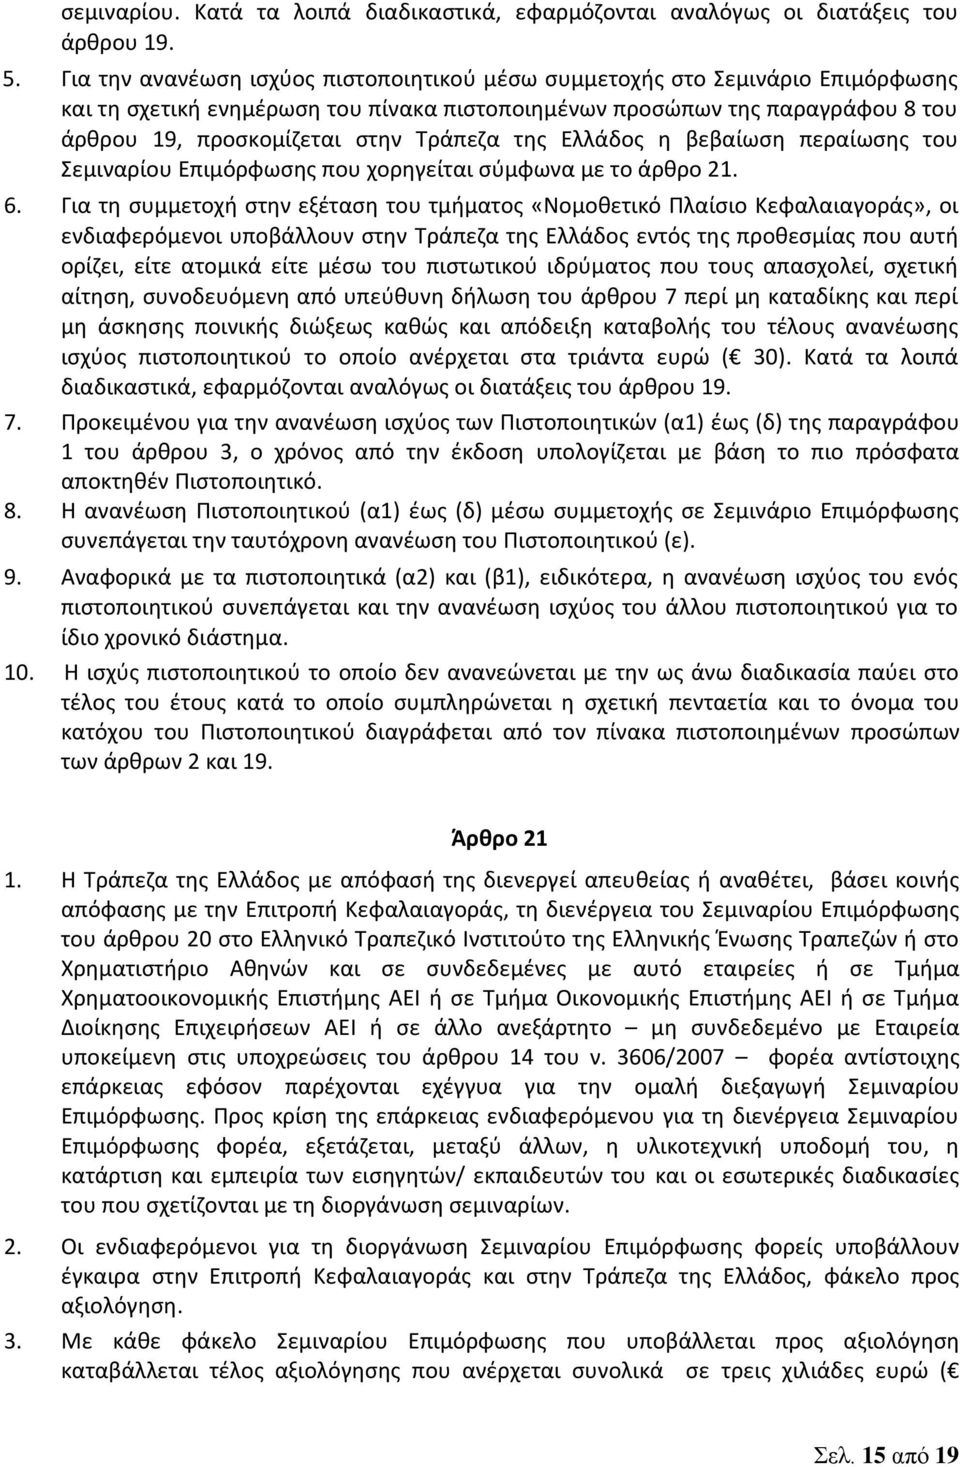 της Ελλάδος η βεβαίωση περαίωσης του Σεμιναρίου Επιμόρφωσης που χορηγείται σύμφωνα με το άρθρο 21. 6.